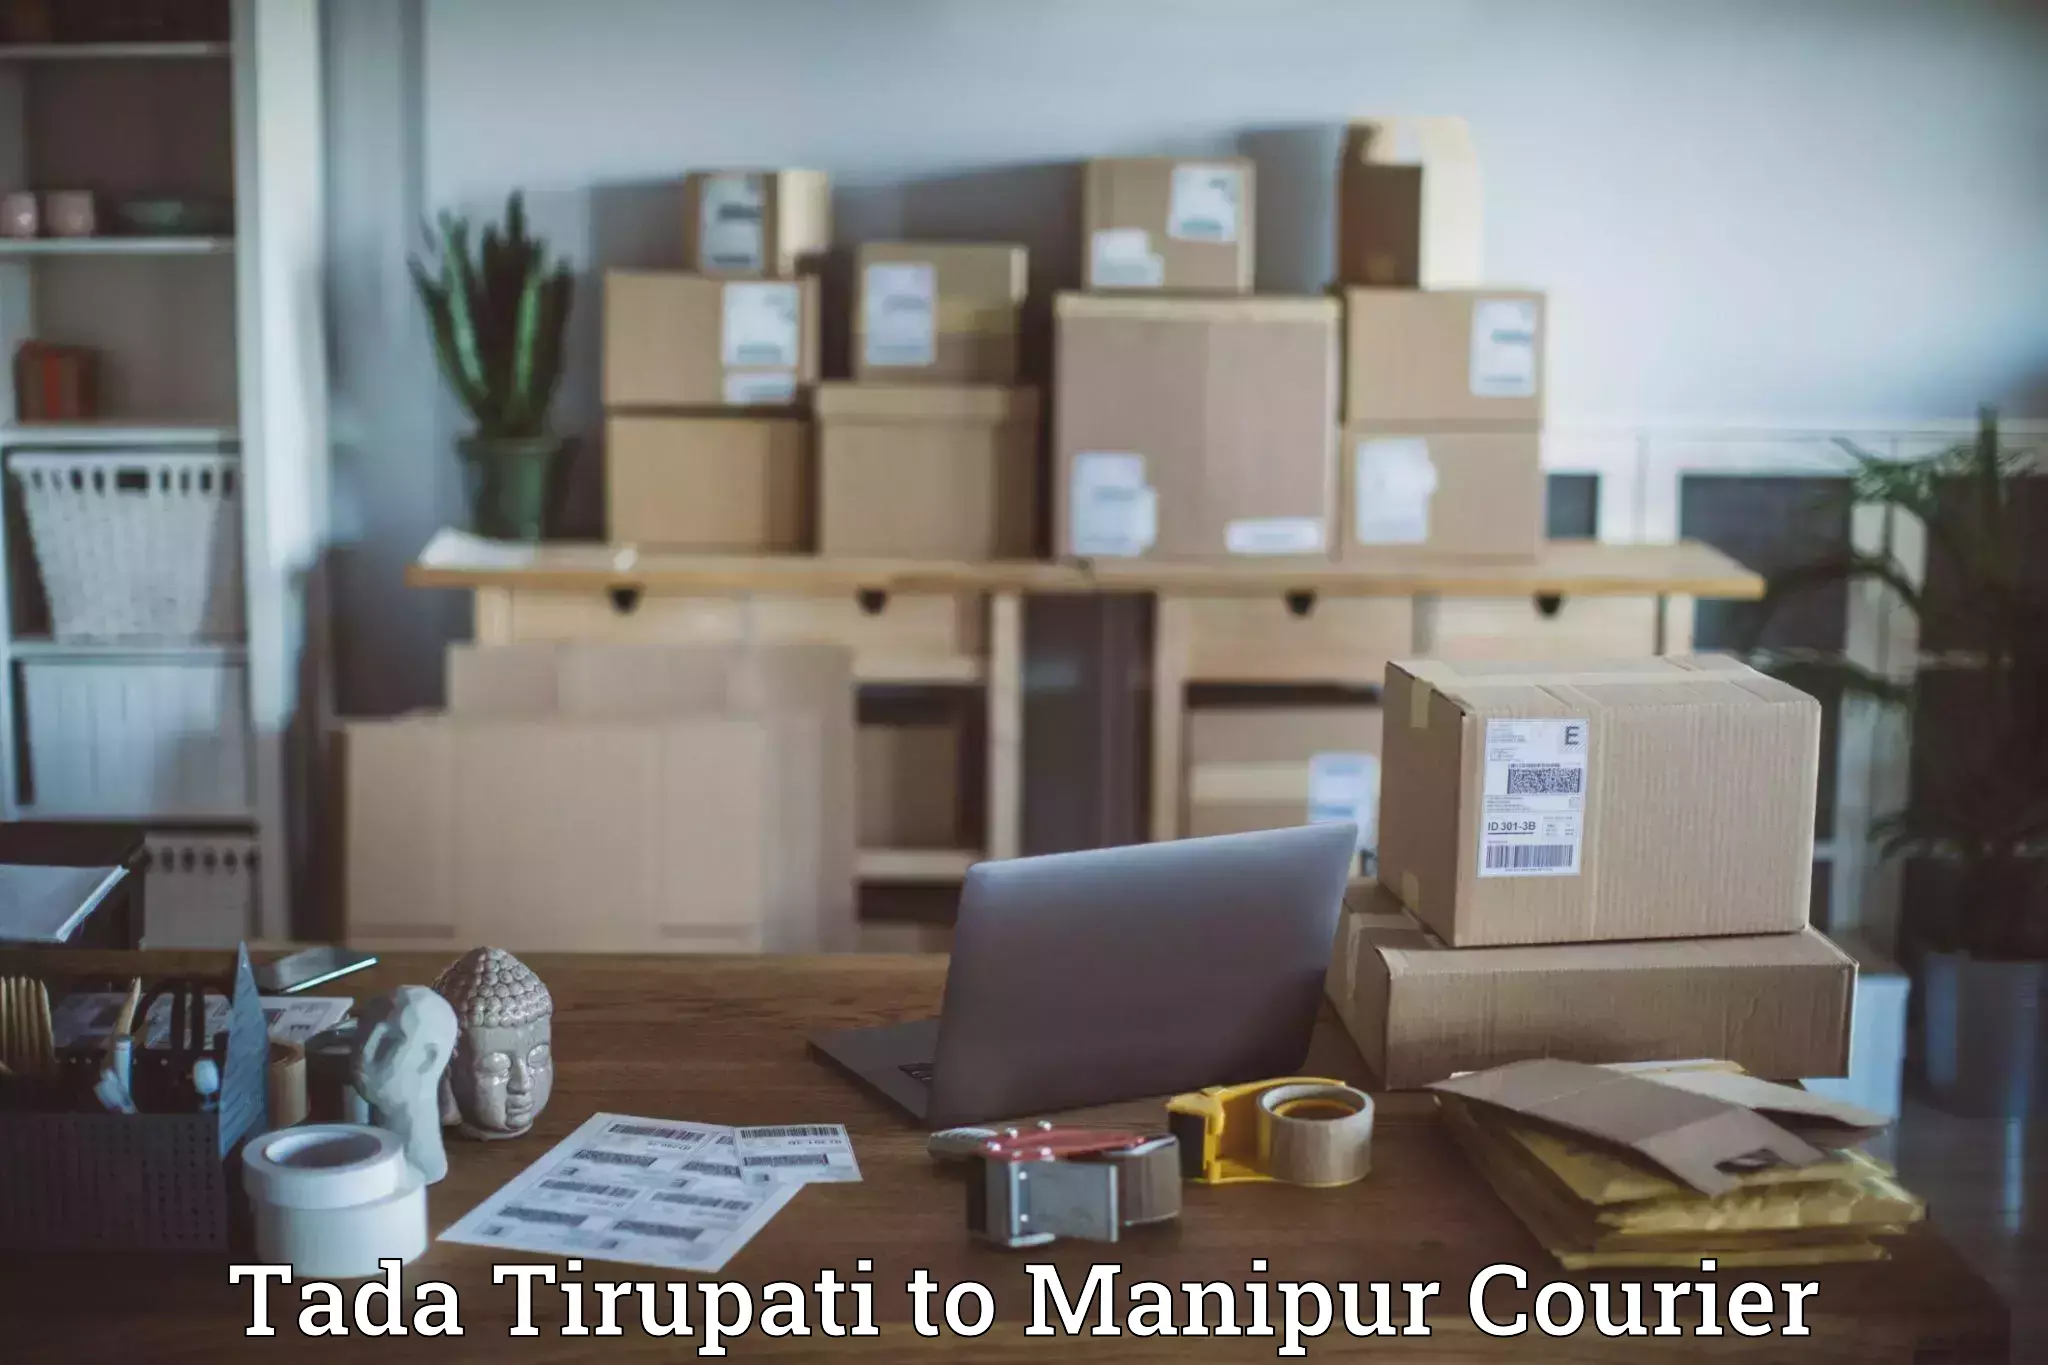 Affordable parcel service Tada Tirupati to Chandel